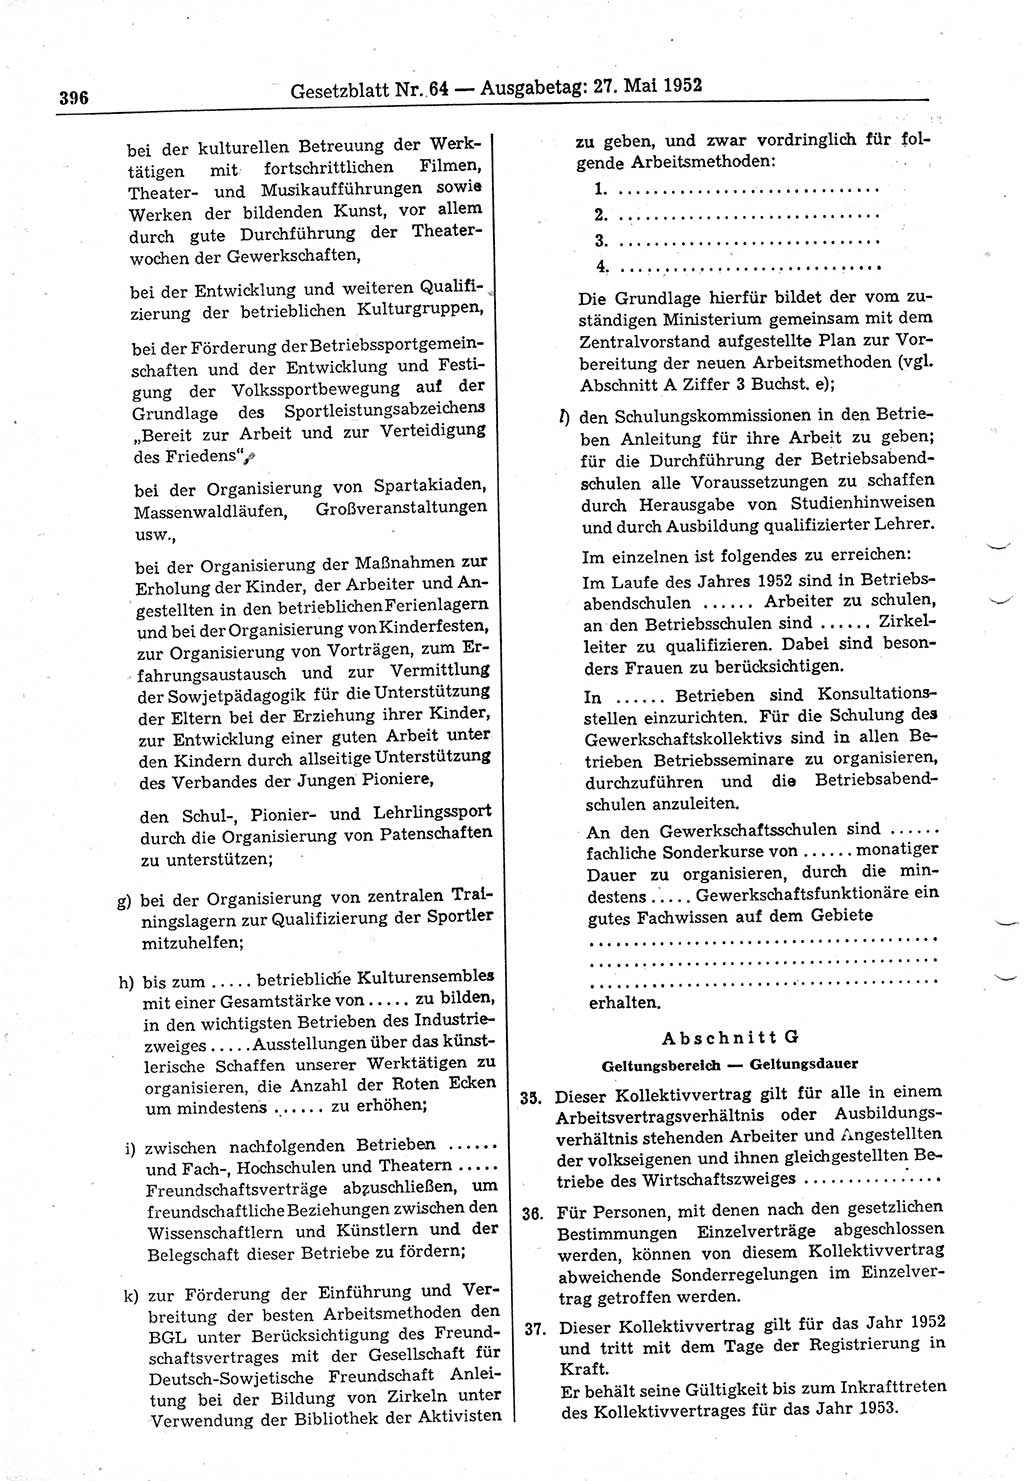 Gesetzblatt (GBl.) der Deutschen Demokratischen Republik (DDR) 1952, Seite 396 (GBl. DDR 1952, S. 396)